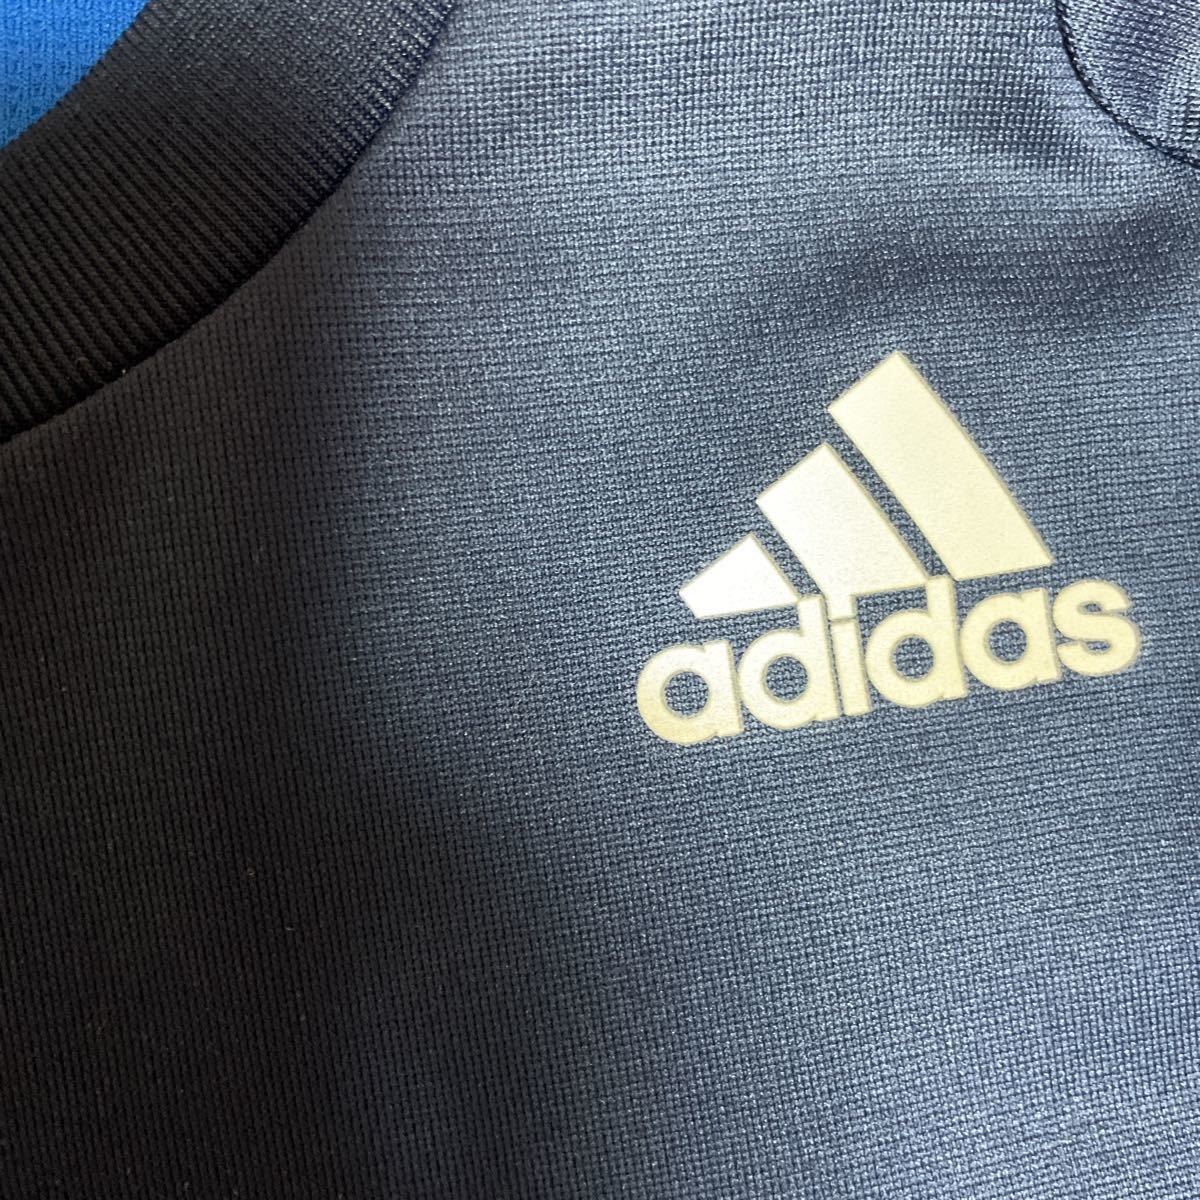 adidas Adidas короткий рукав p Ractis рубашка рубашка с коротким рукавом M размер полиэстер 